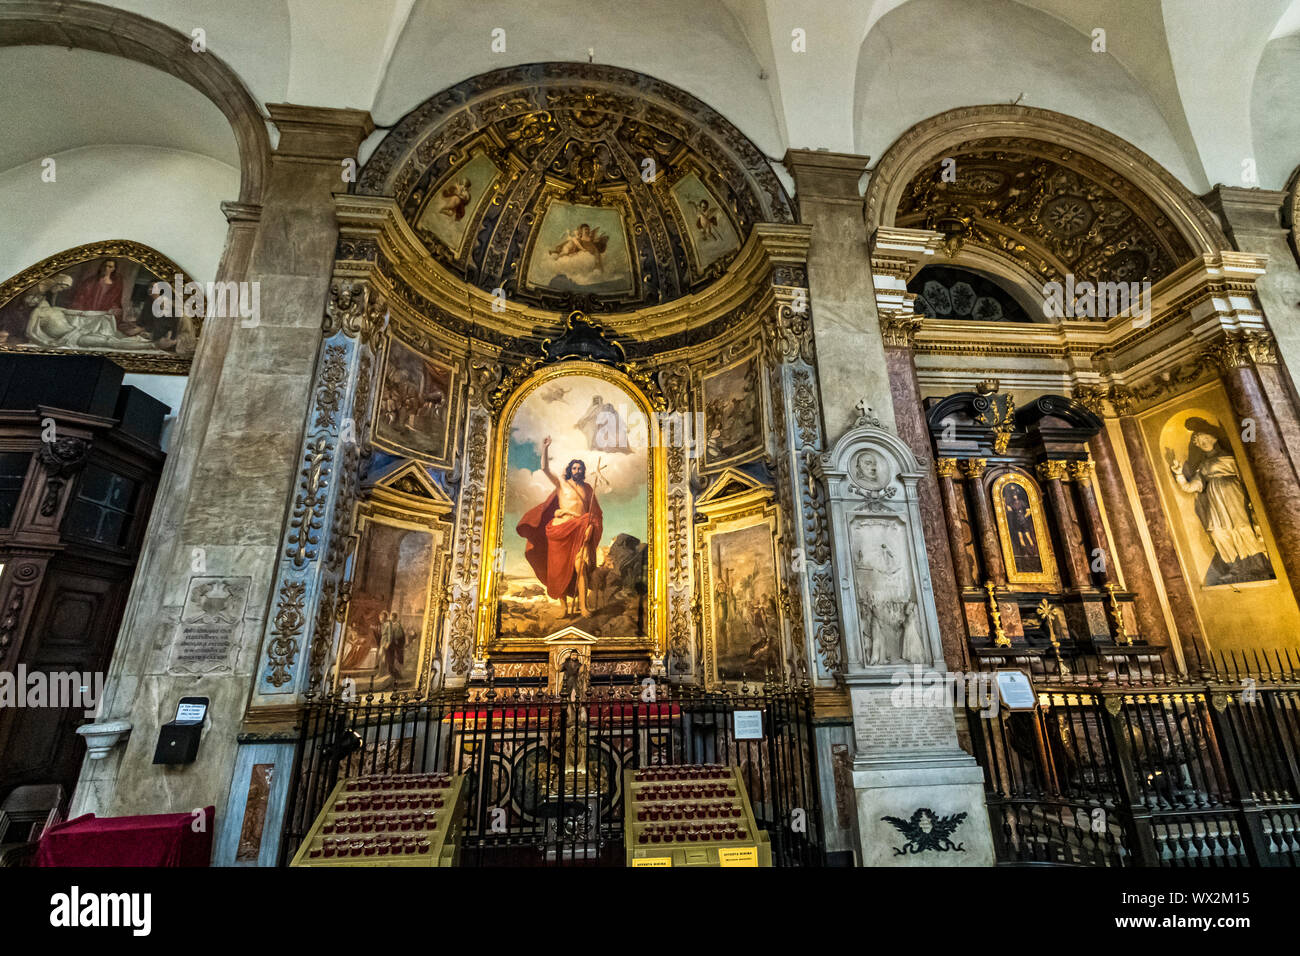 Das Innere des Duomo di Torino, Turin Kathedrale, eine römisch-katholische Kathedrale in Turin, dem heiligen Johannes dem Täufer, Turin, Italien Stockfoto